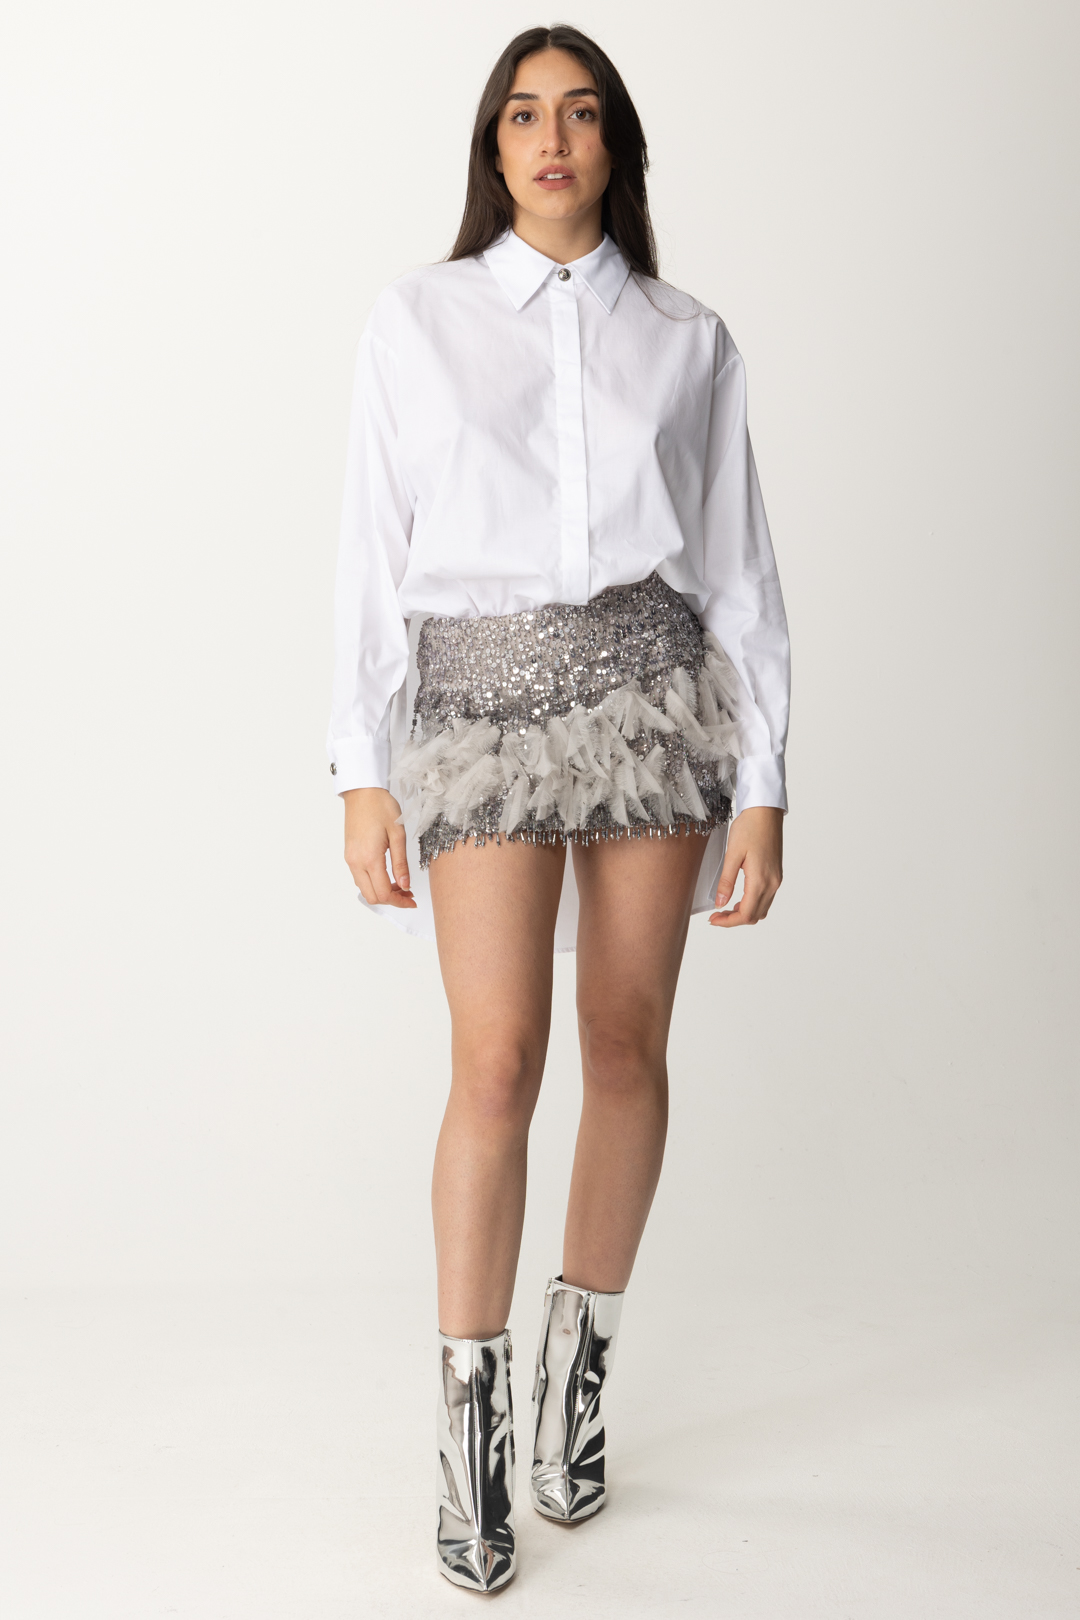 Vorschau: Elisabetta Franchi Minikleid mit besticktem Hemd und Rock Bianco/Perla